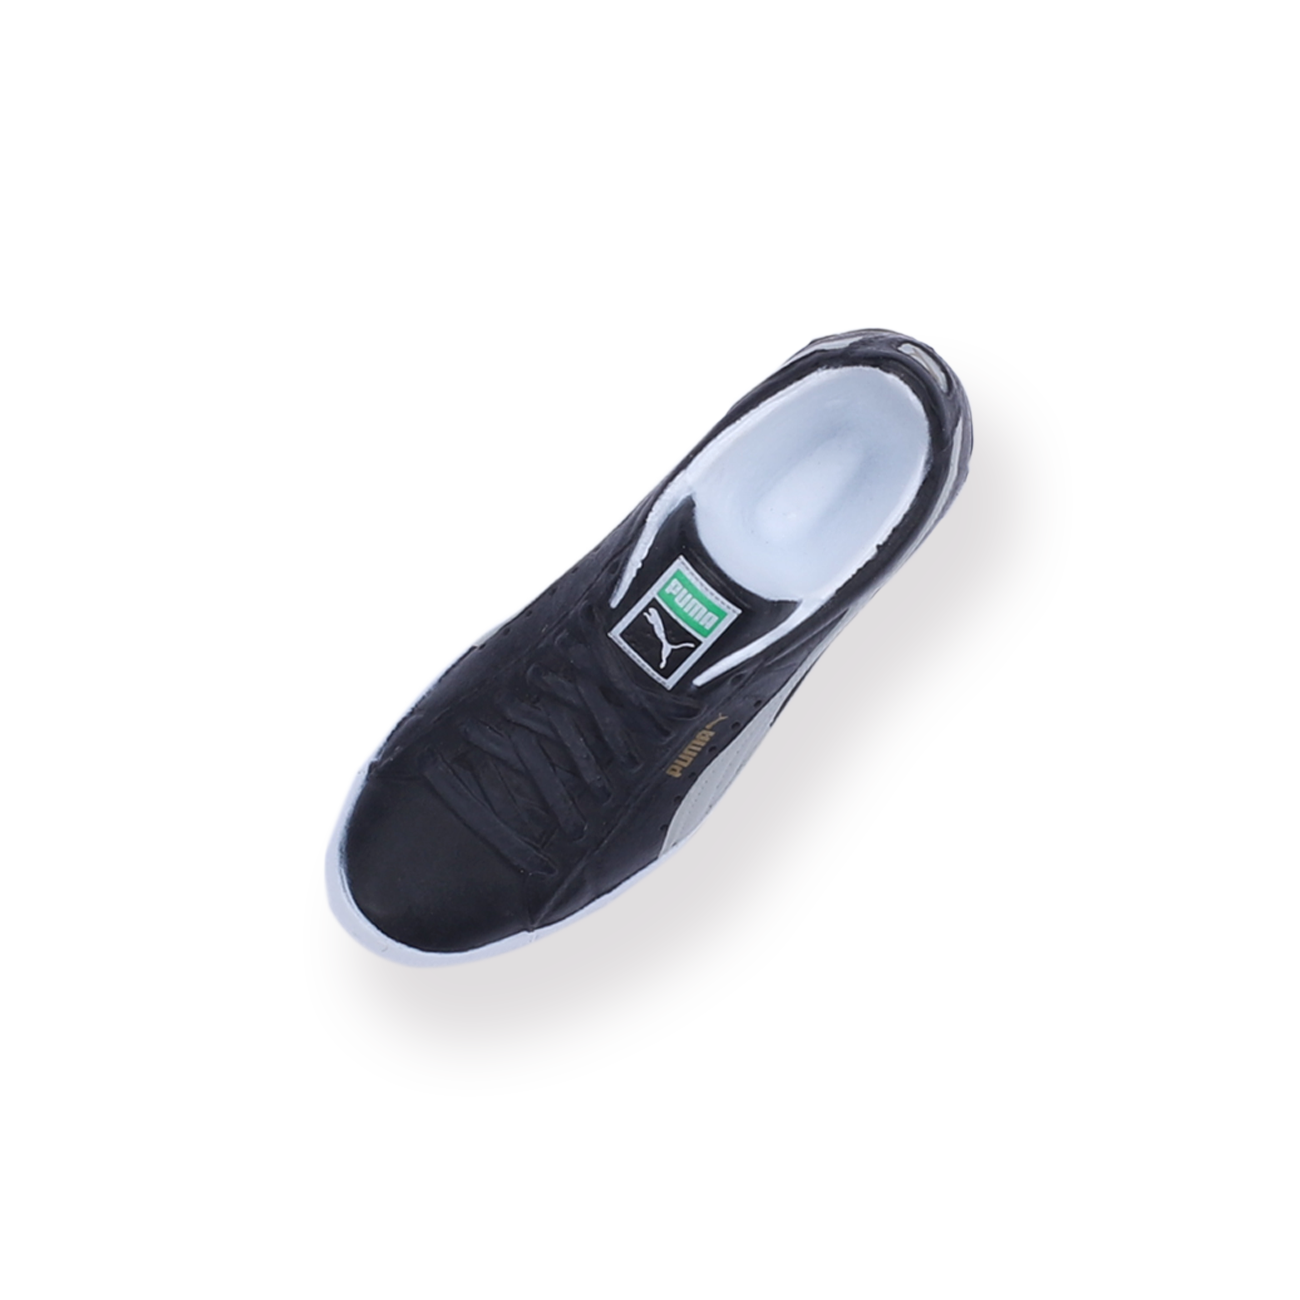 Buy hummel Unisex Adult Marathona Snow Blind White Sneakers-6.5 UK (40 EU)  (7.5 US) (201680_9001) at Amazon.in